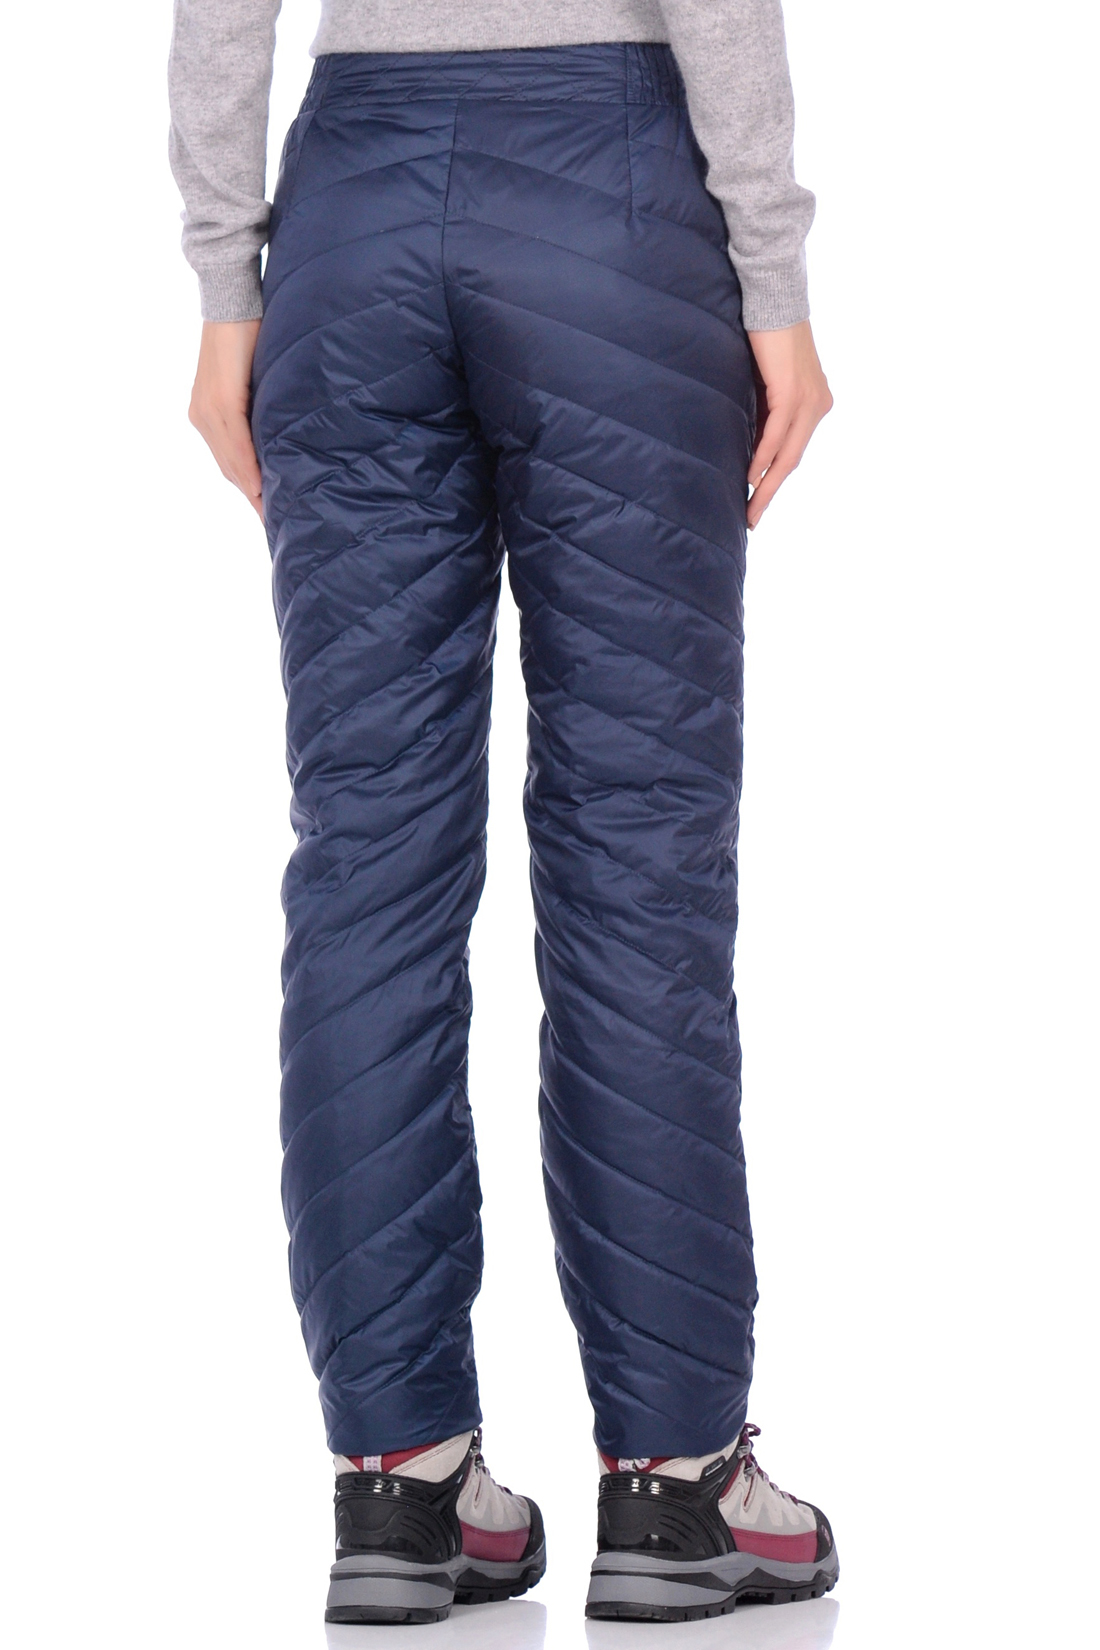 Утеплённые брюки на пуху (арт. baon B299550), размер S, цвет синий Утеплённые брюки на пуху (арт. baon B299550) - фото 2